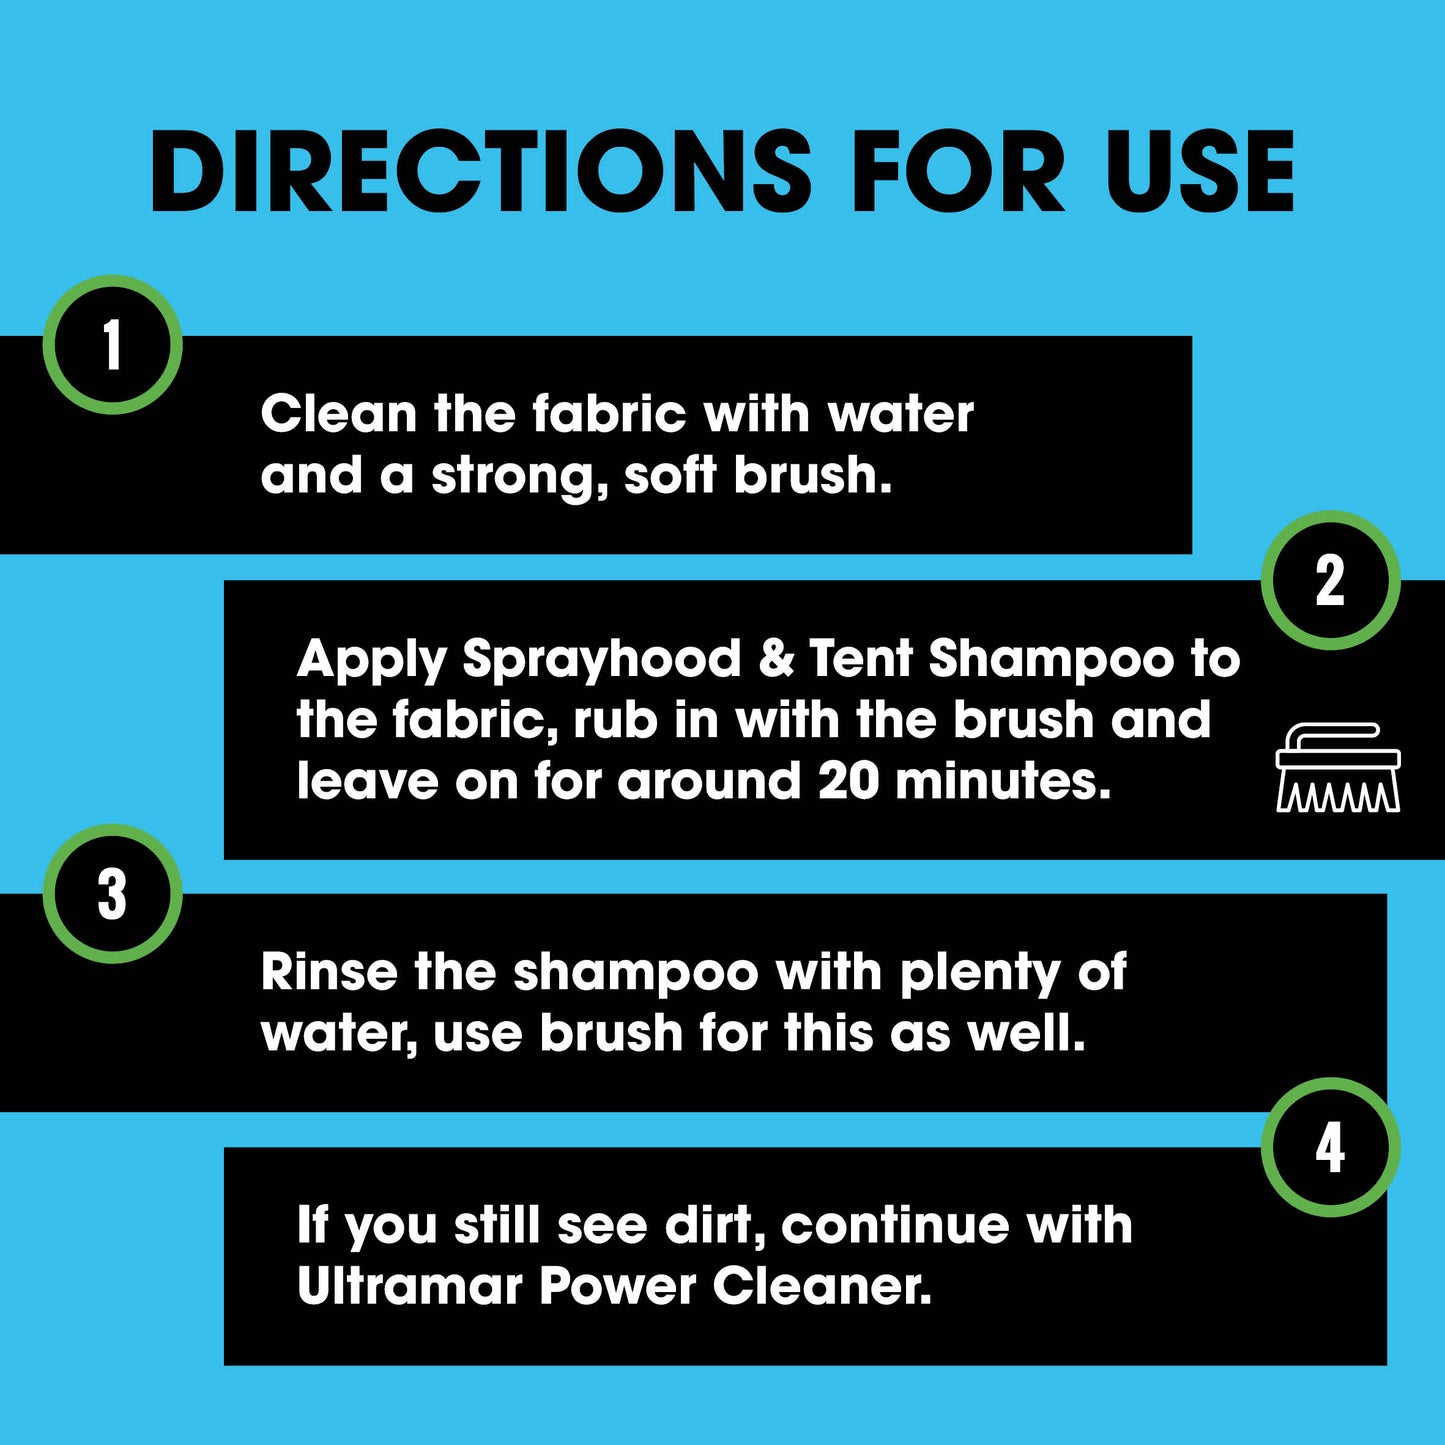 Kludrens til din bådkaleche: Sprayhood & Tent Shampoo